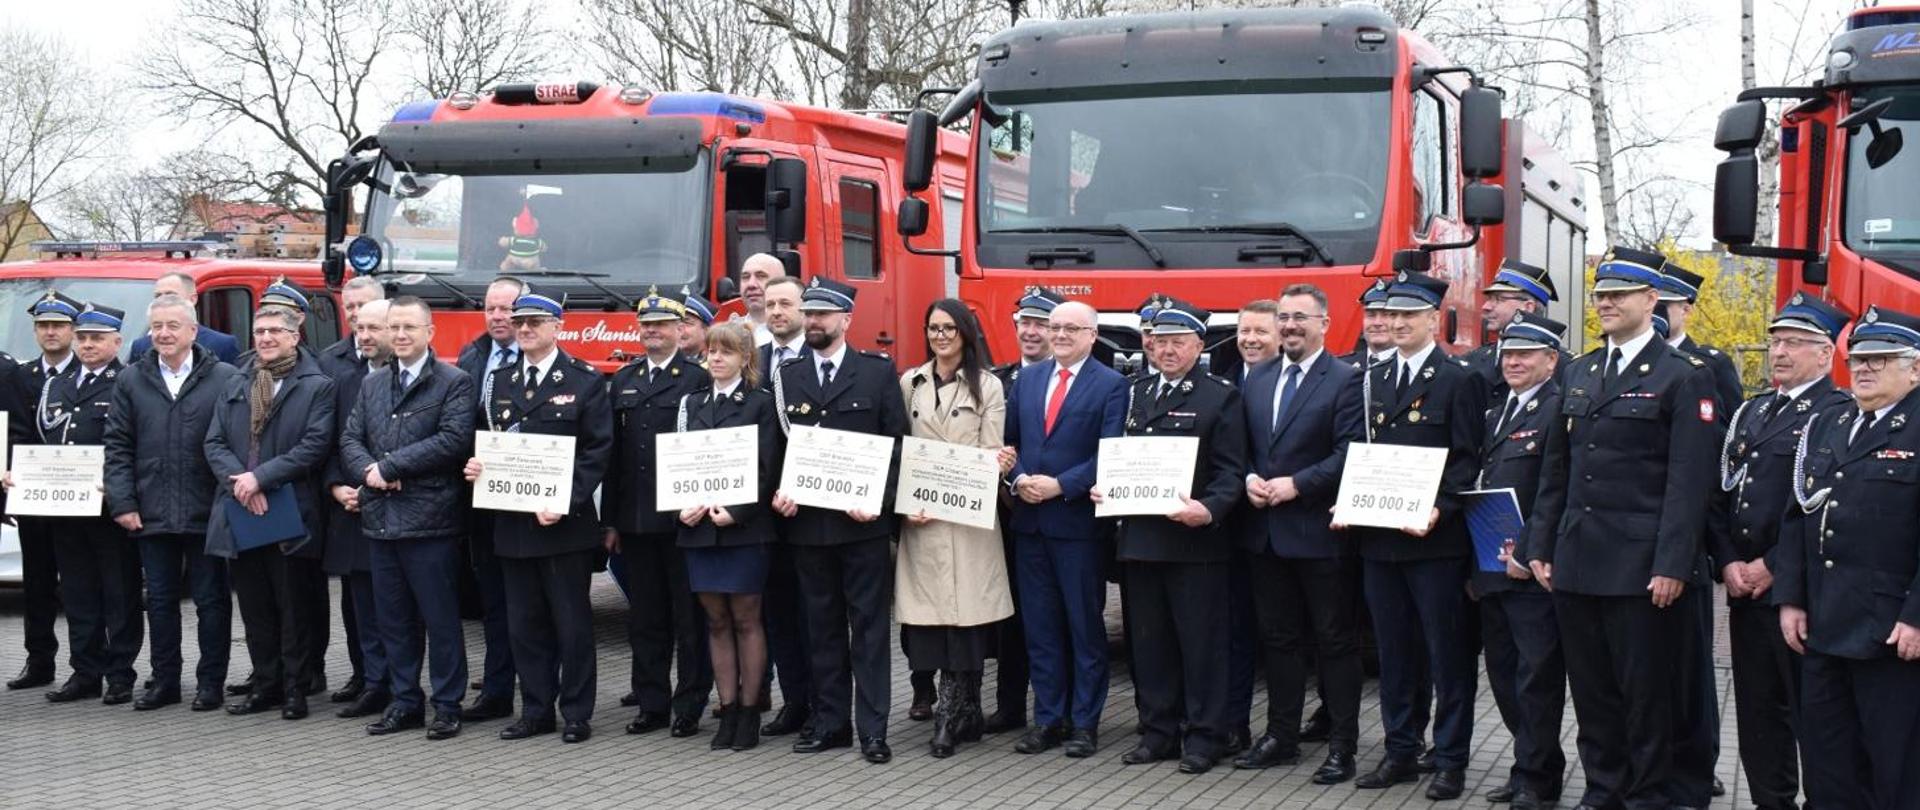 Obraz przedstawia przedstawicieli jednostek OSP, władze gmin i Komendantów Powiatowych pozujących do wspólnego zdjęcia z okazji wręczenia promes na zakup pojazdów pożarniczych